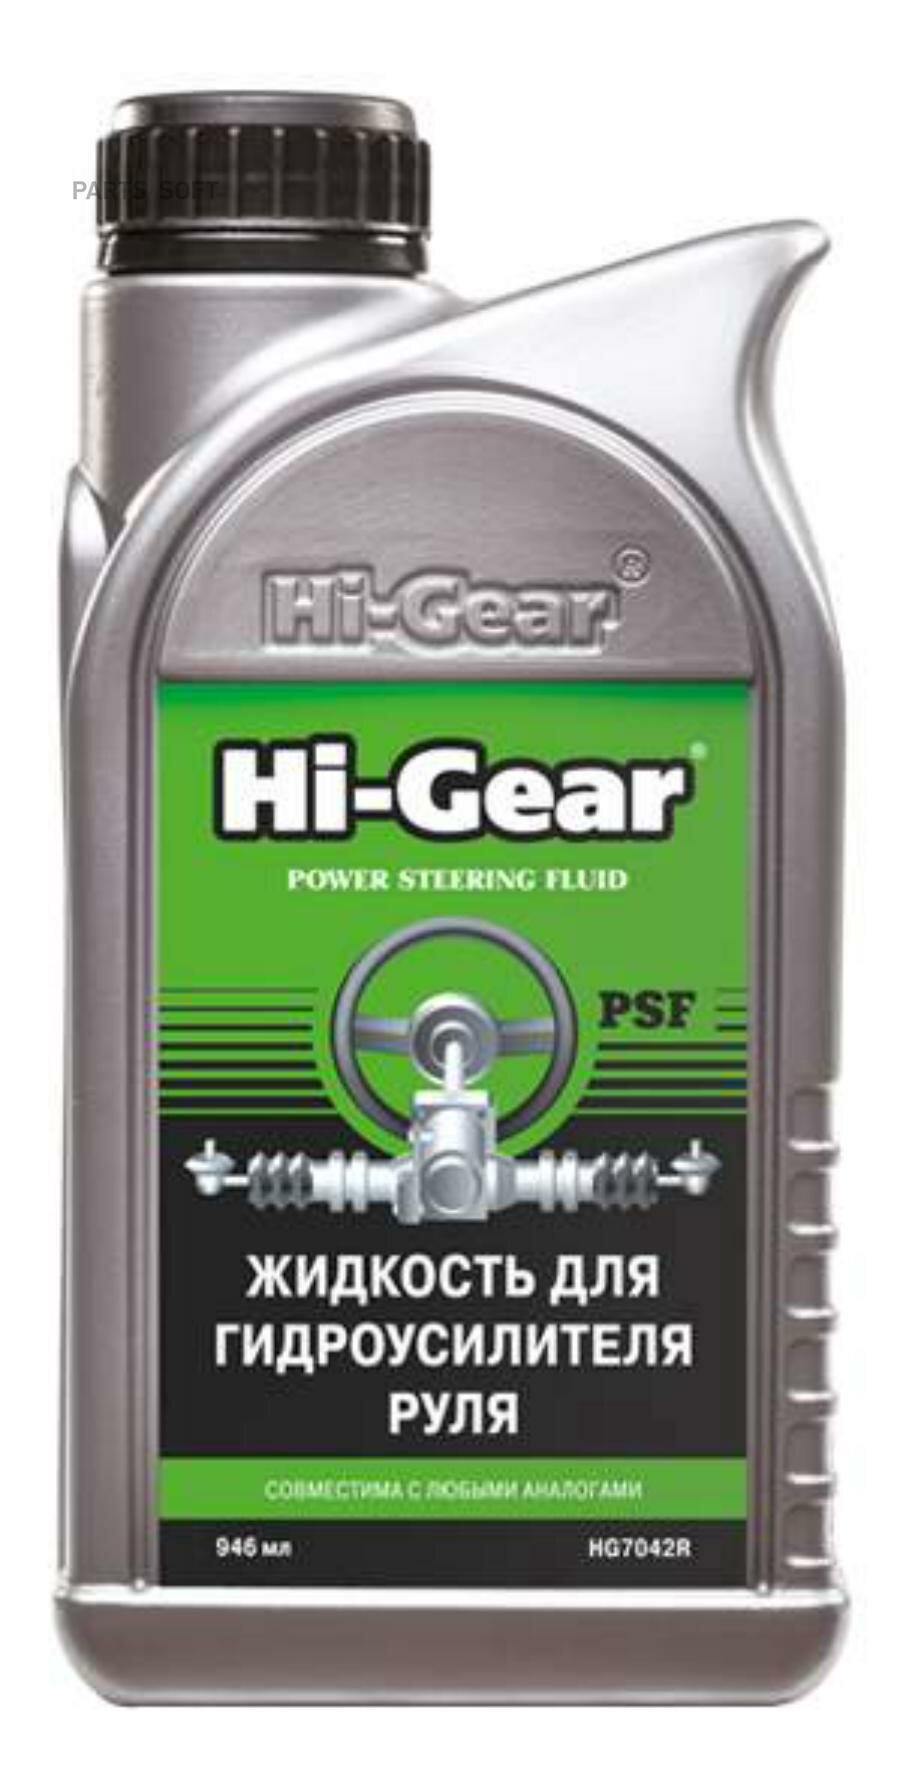 HI-GEAR HG7042R _жидкость для гидроусилителя руля !946ml (страна происх. Россия)\